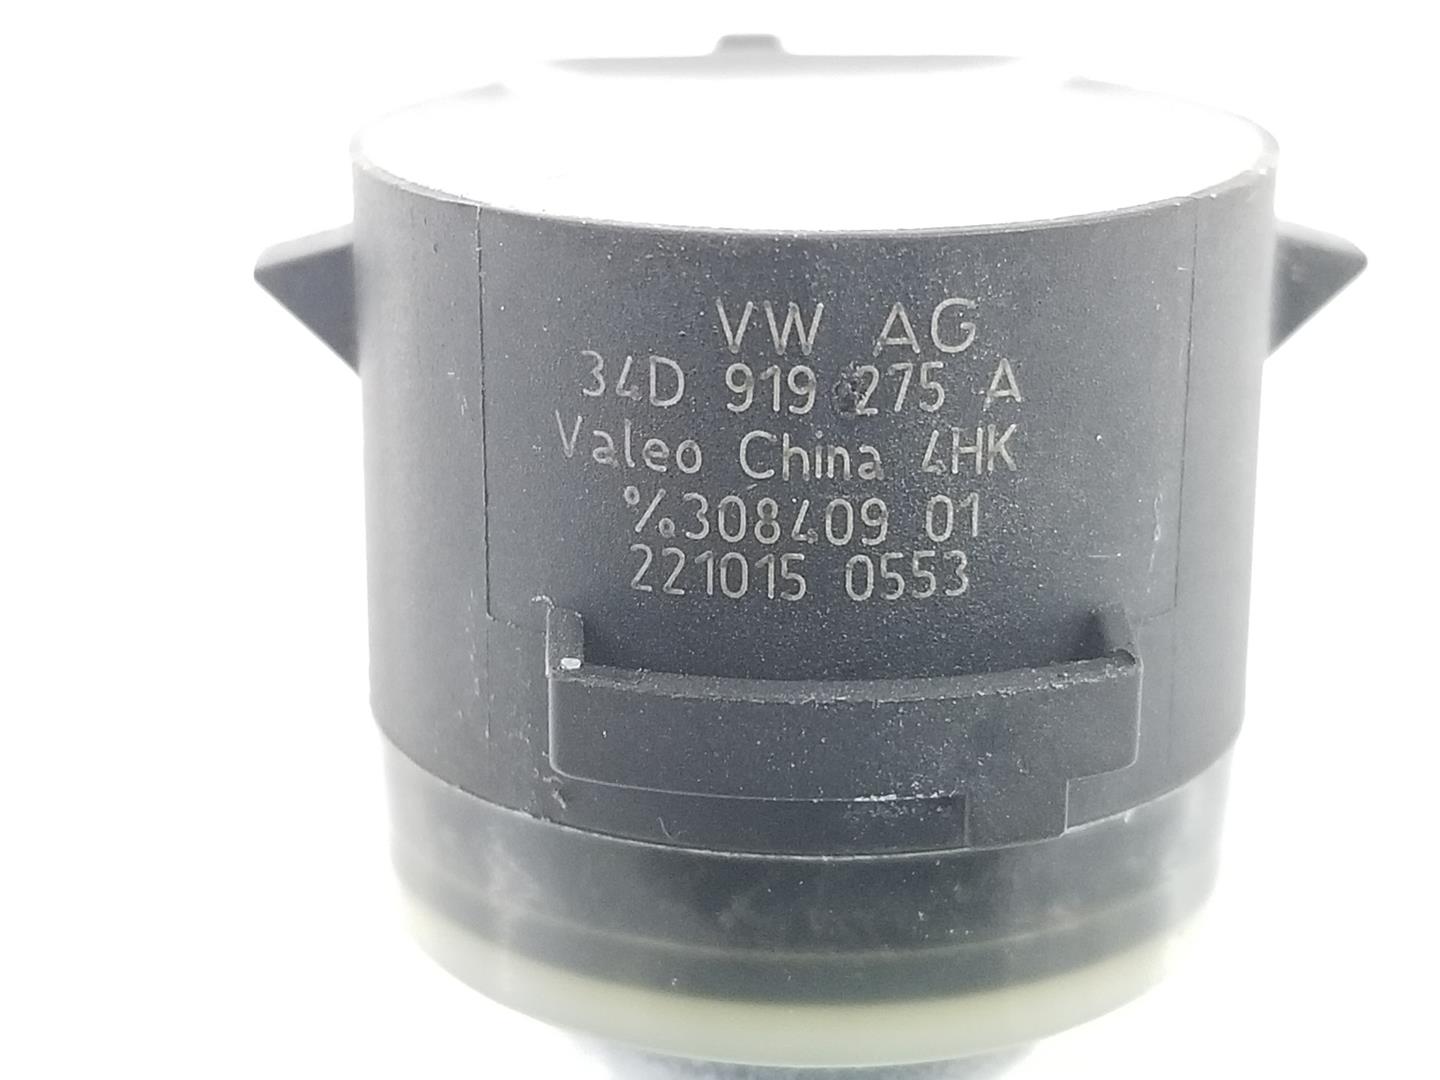 VOLKSWAGEN Variant VII TDI (2014-2024) Parking Sensor Rear 34D919275A, 34D919275A 19842760